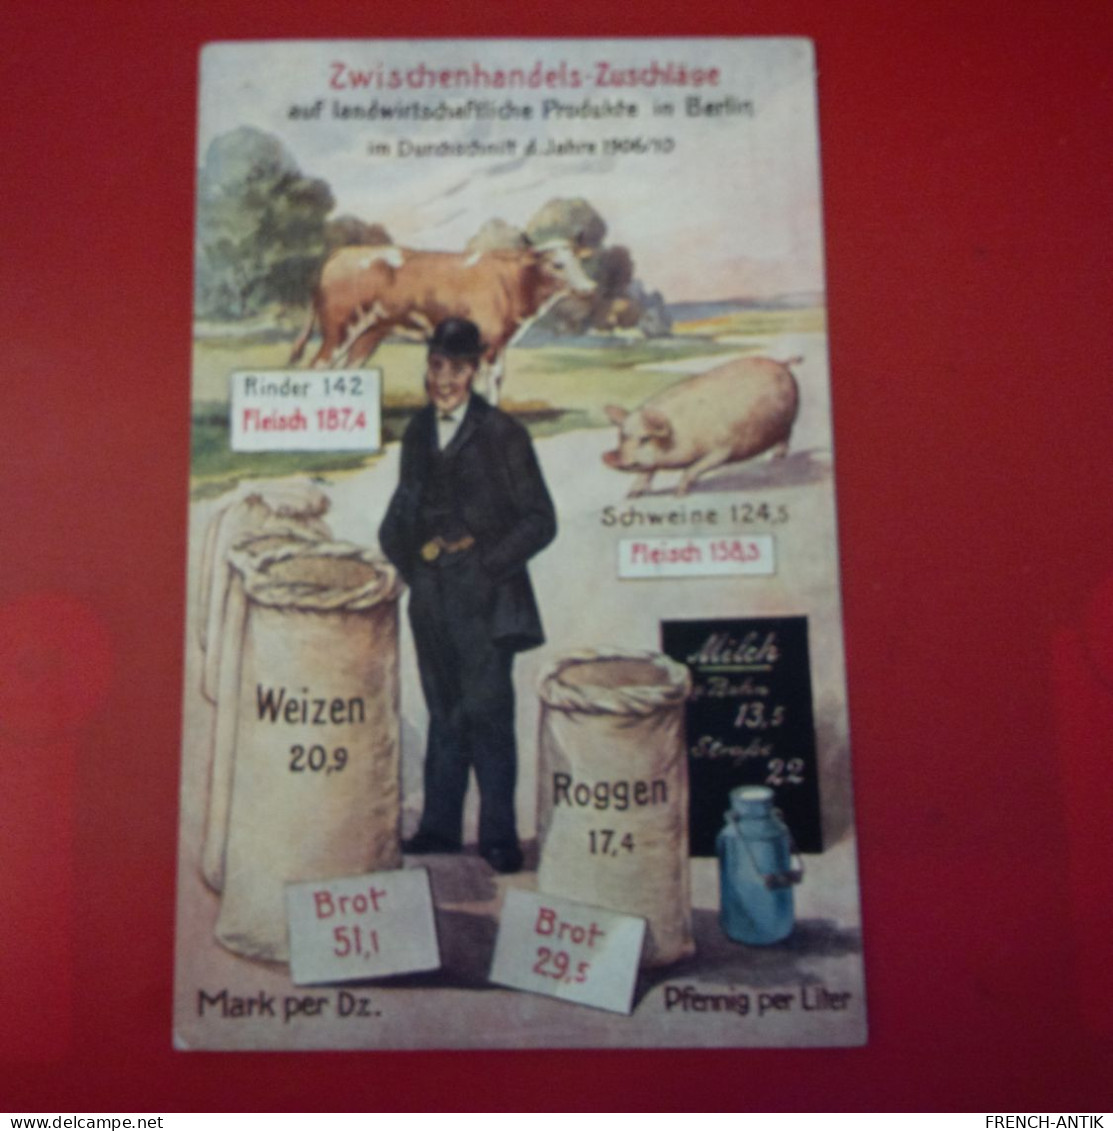 PUB ZWISCHENHANDELS ZUSCHLAGE PRODUKTE IN BERLIN - Advertising